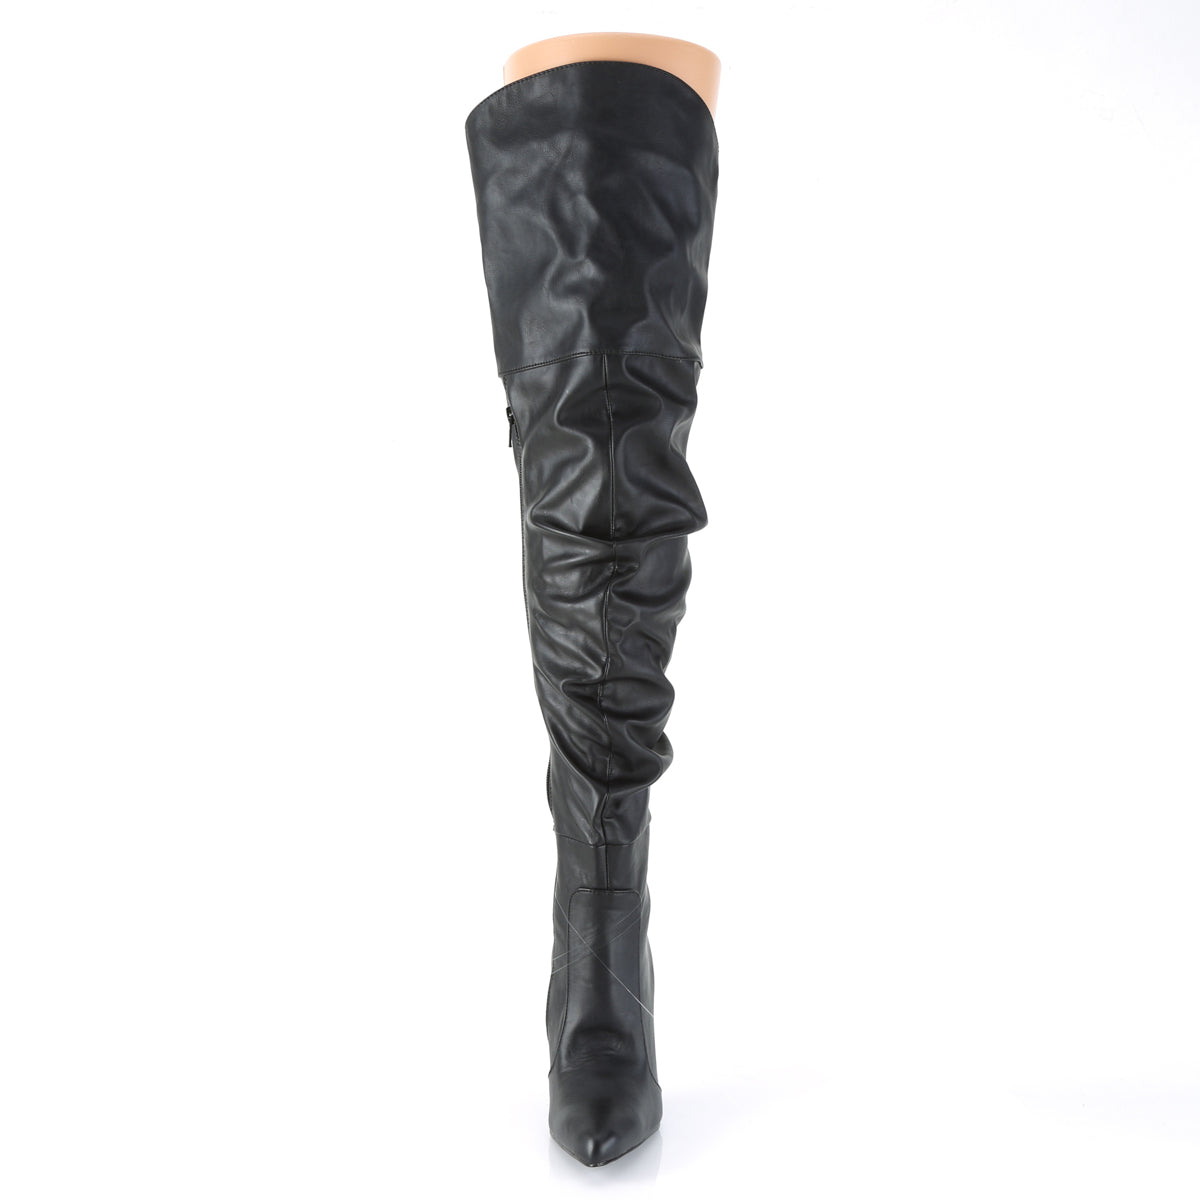 Pleaser Womens Boots CLASSIQUE-3011 Blk Faux Leather